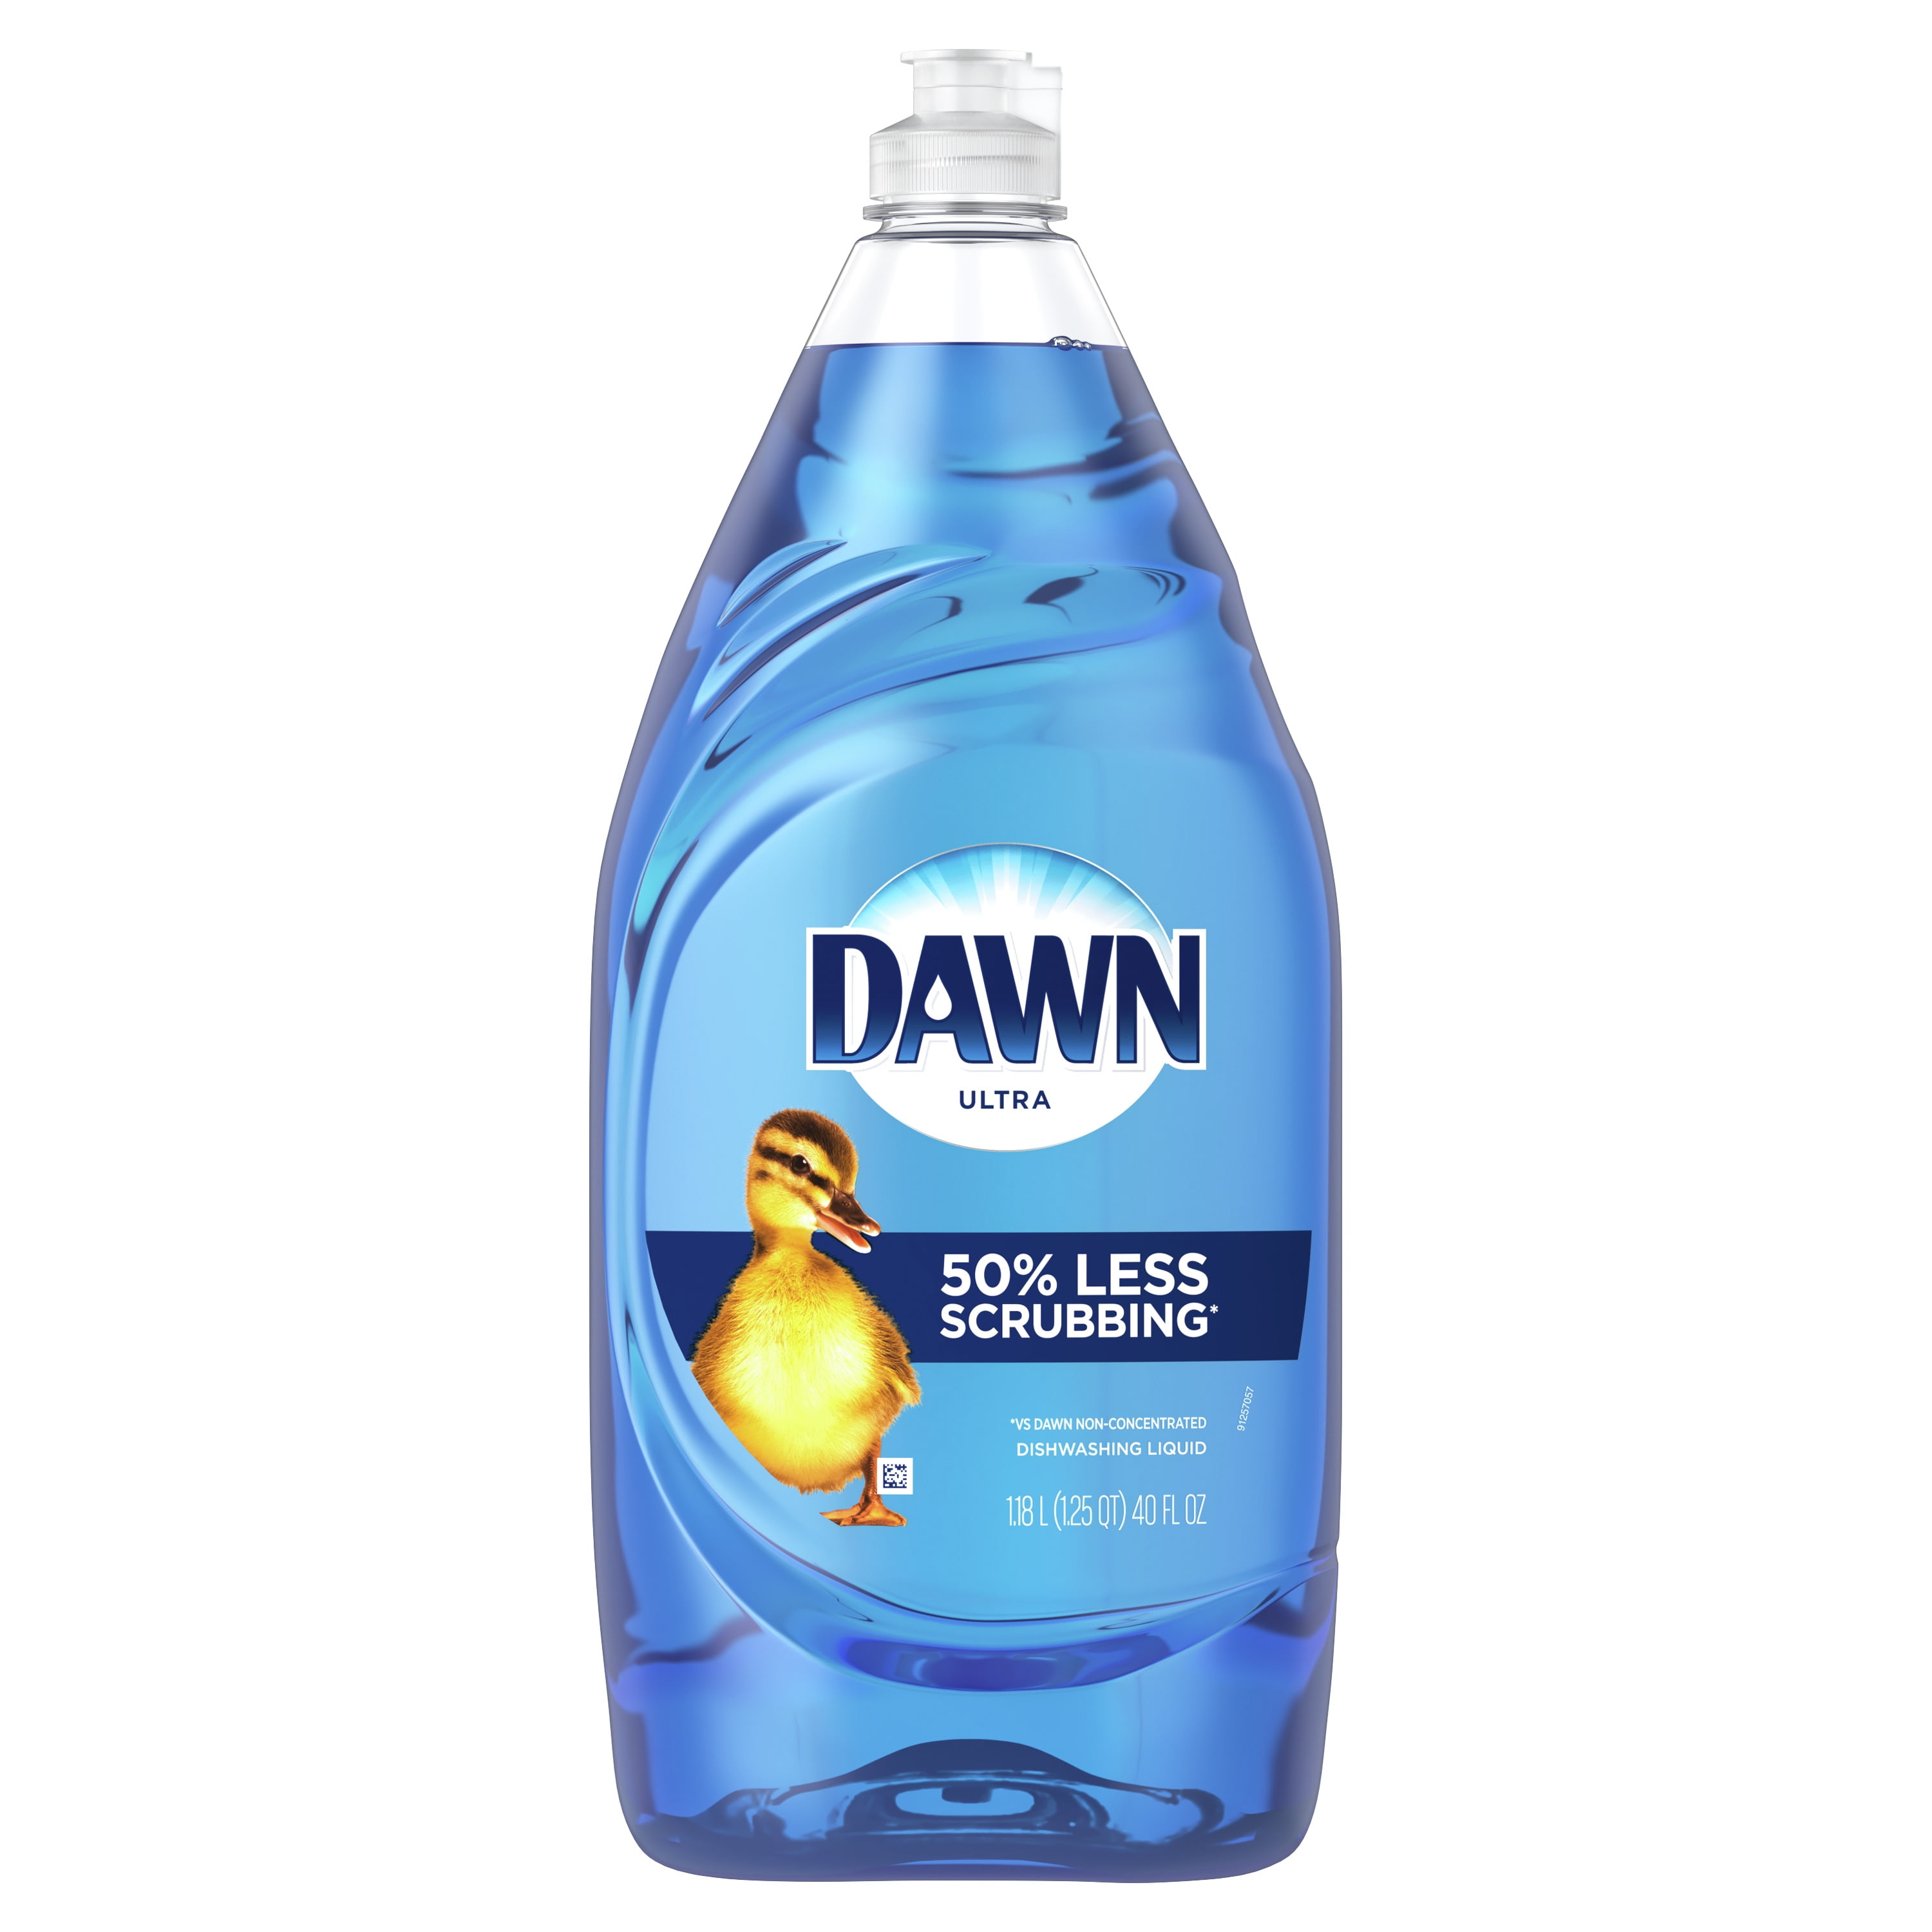 Dawn Ultra Dishwashing Liquid - 1.18 l (1.25 qt) 40 fl oz